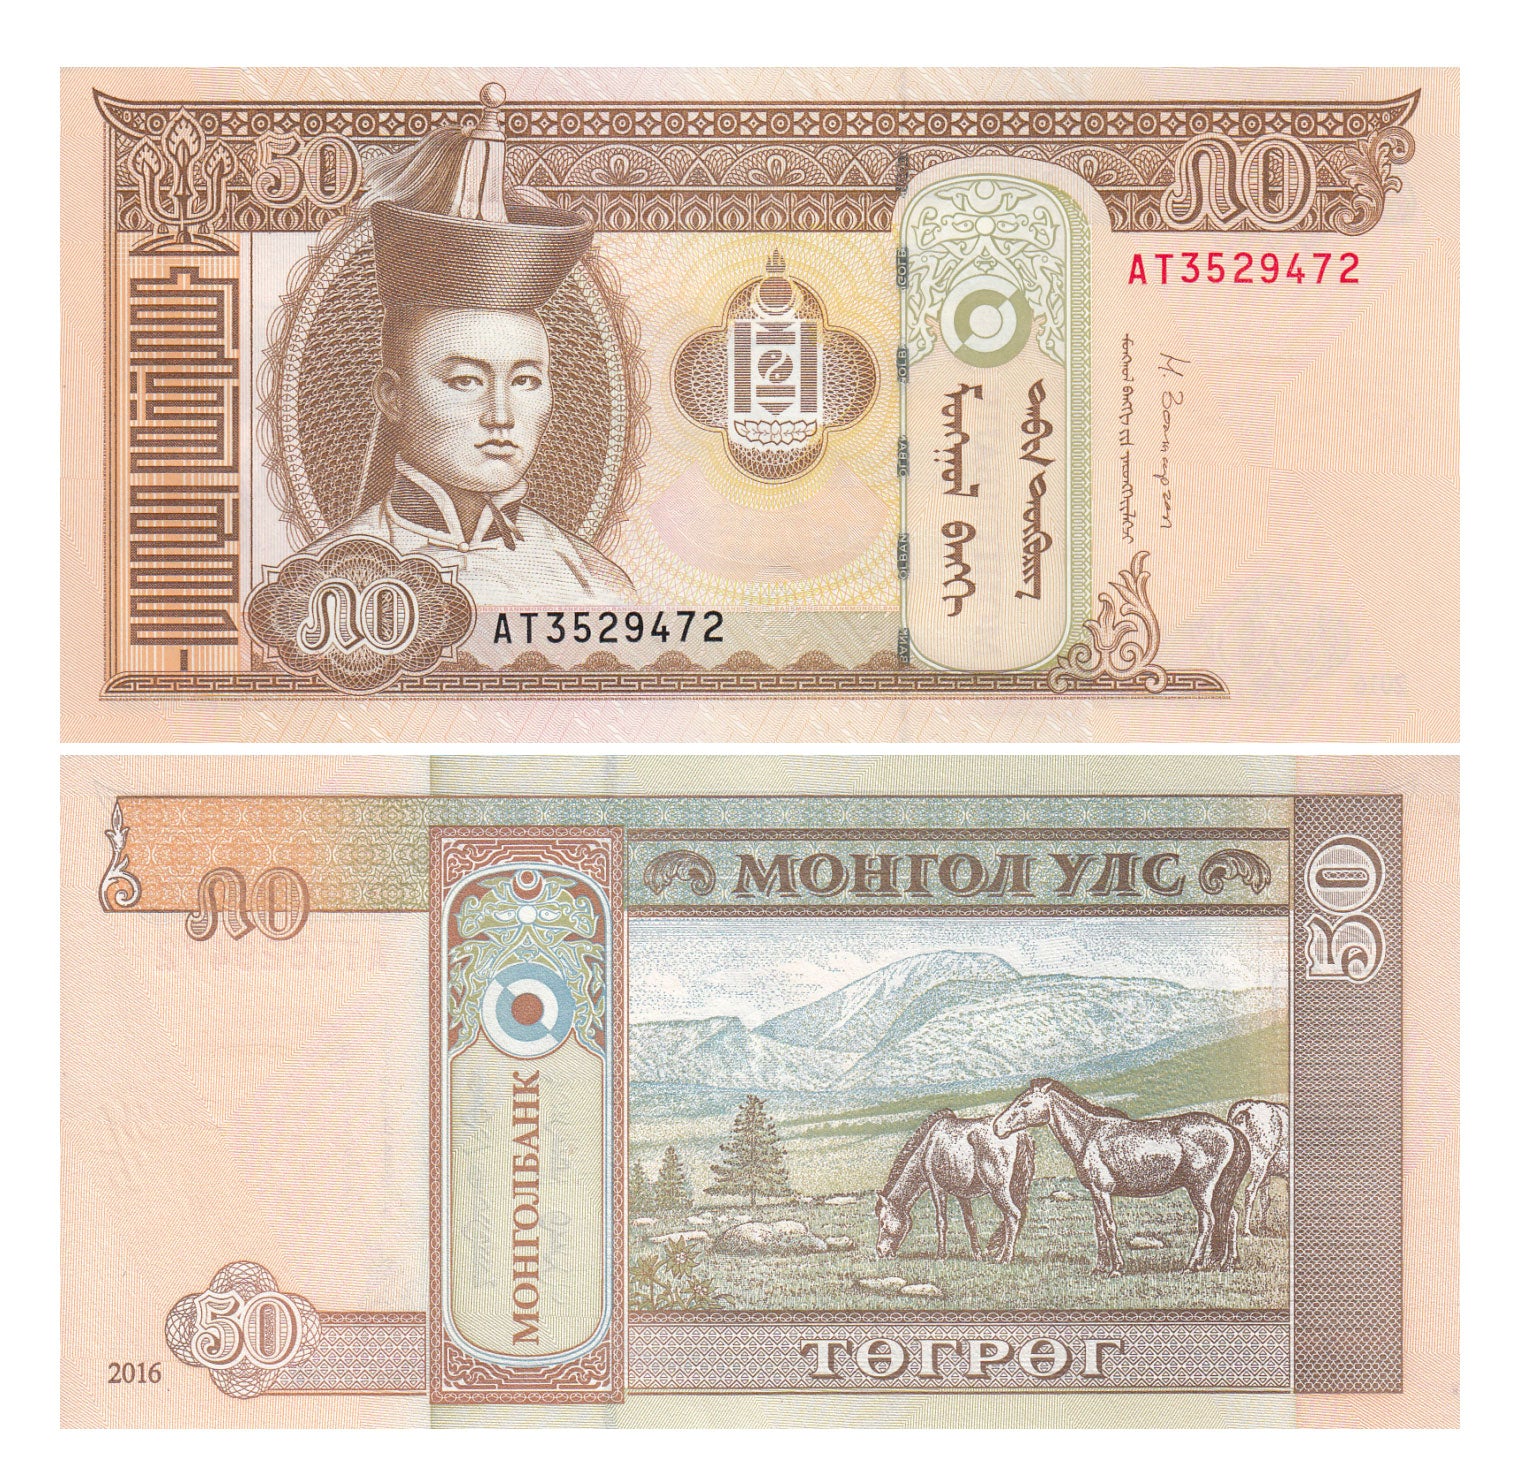 MONGOLEI 50 TUGRIK |  BANKNOTE 2016 UNC